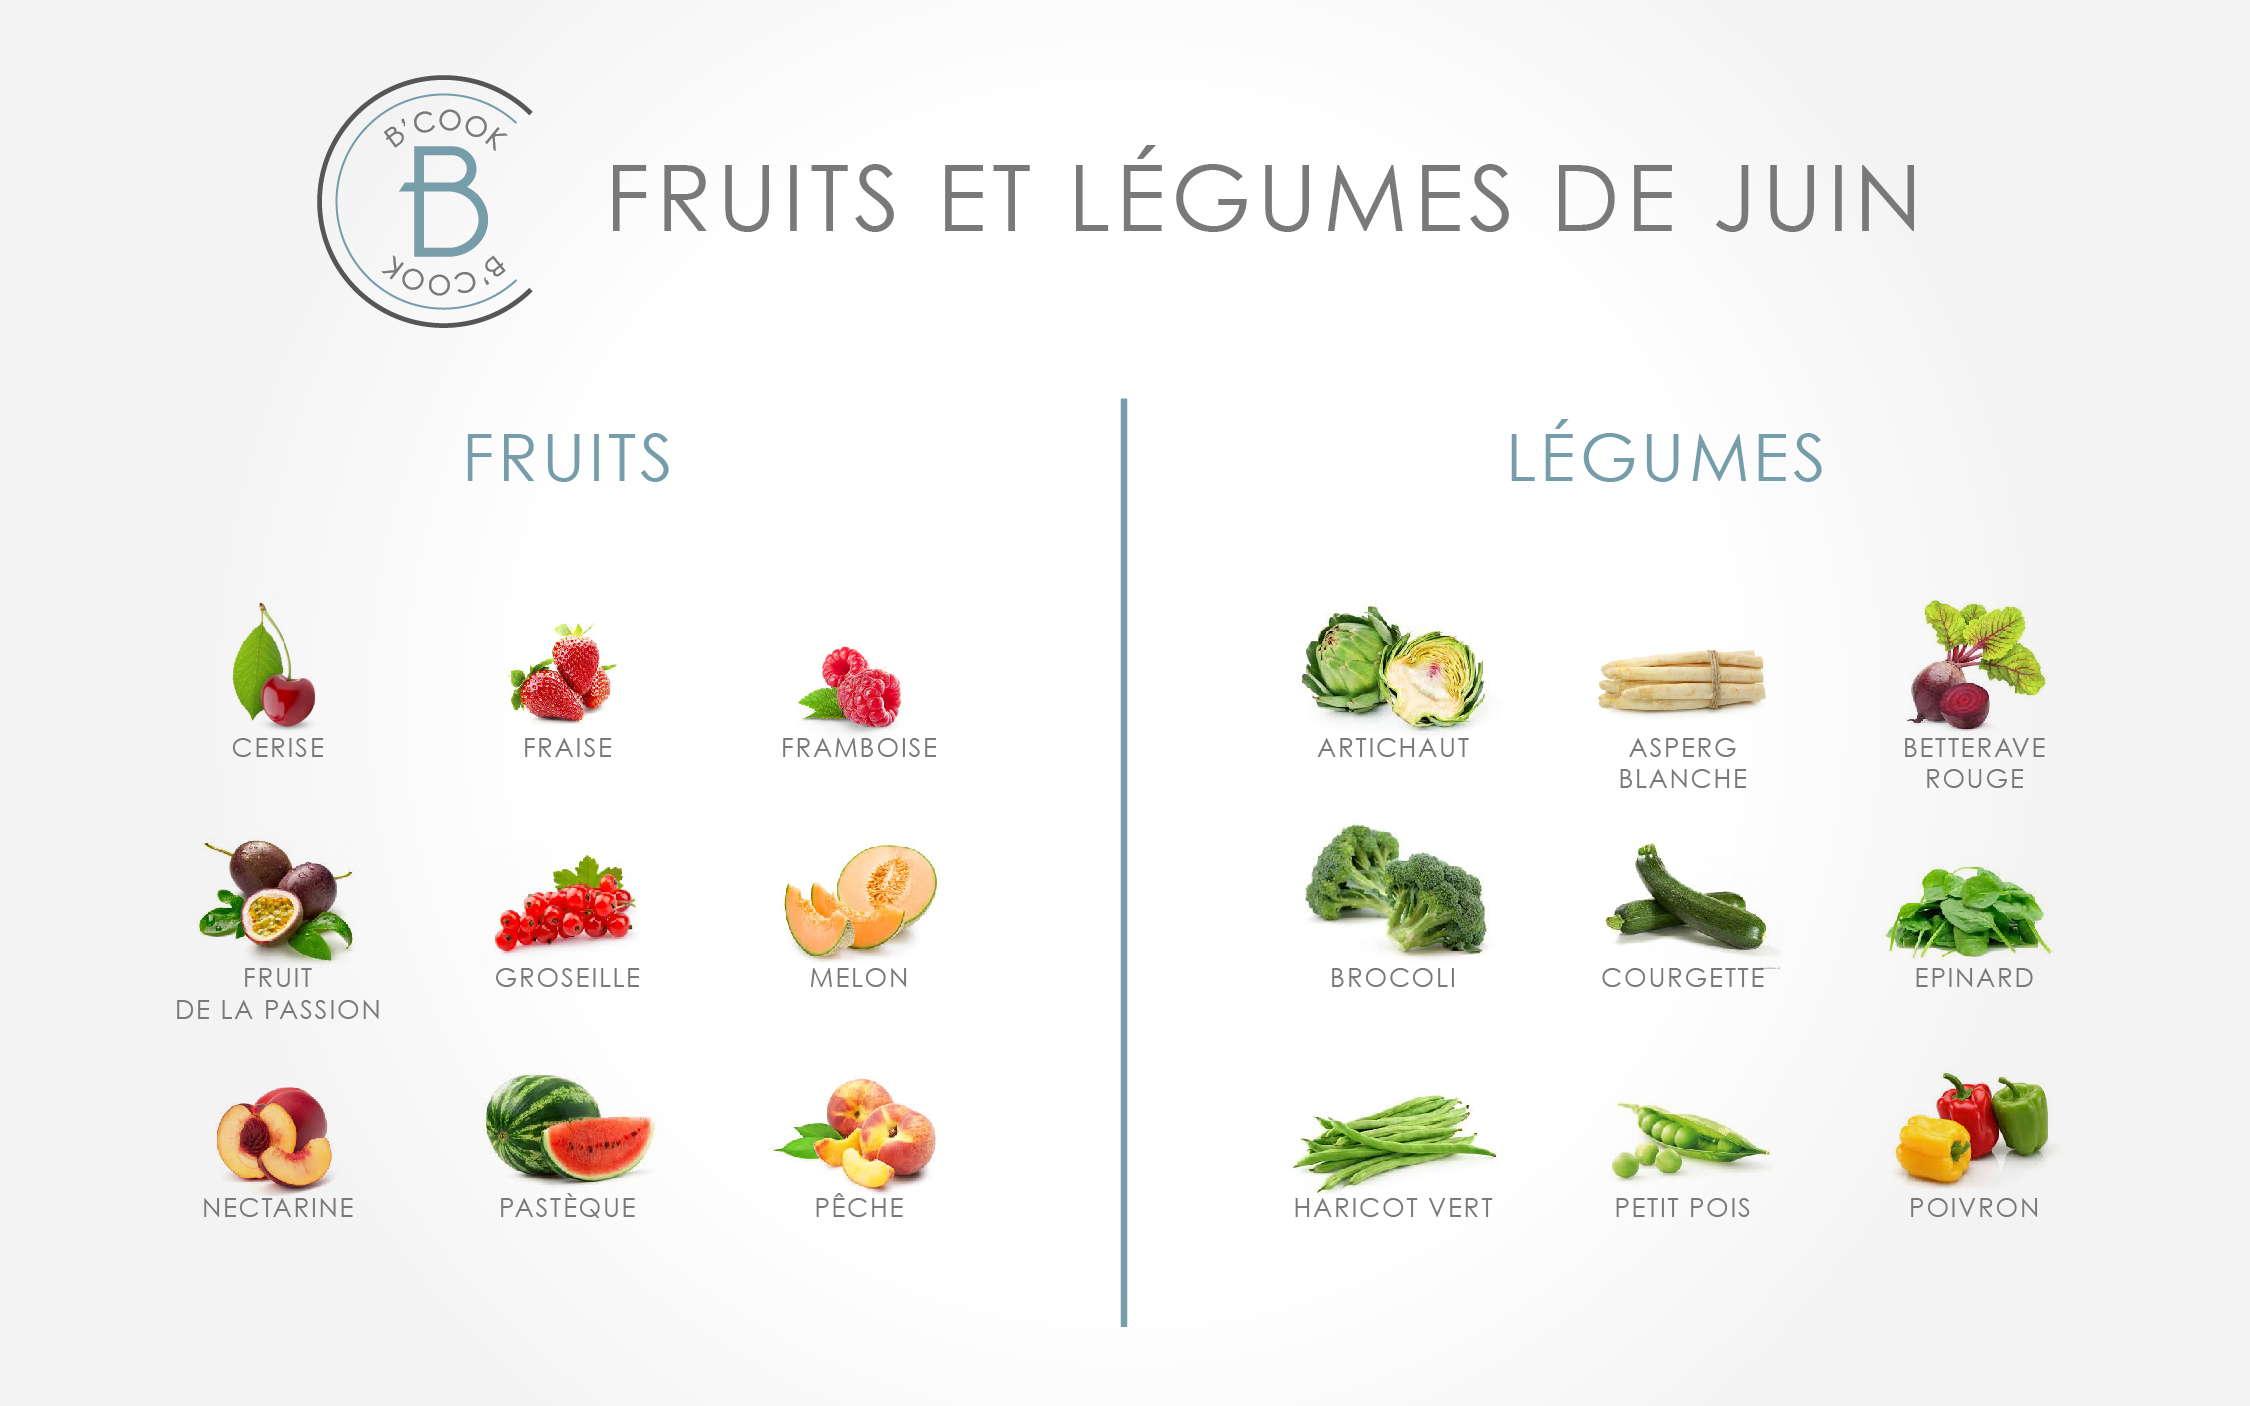 Les fruits et légumes du mois de juin - B'cook